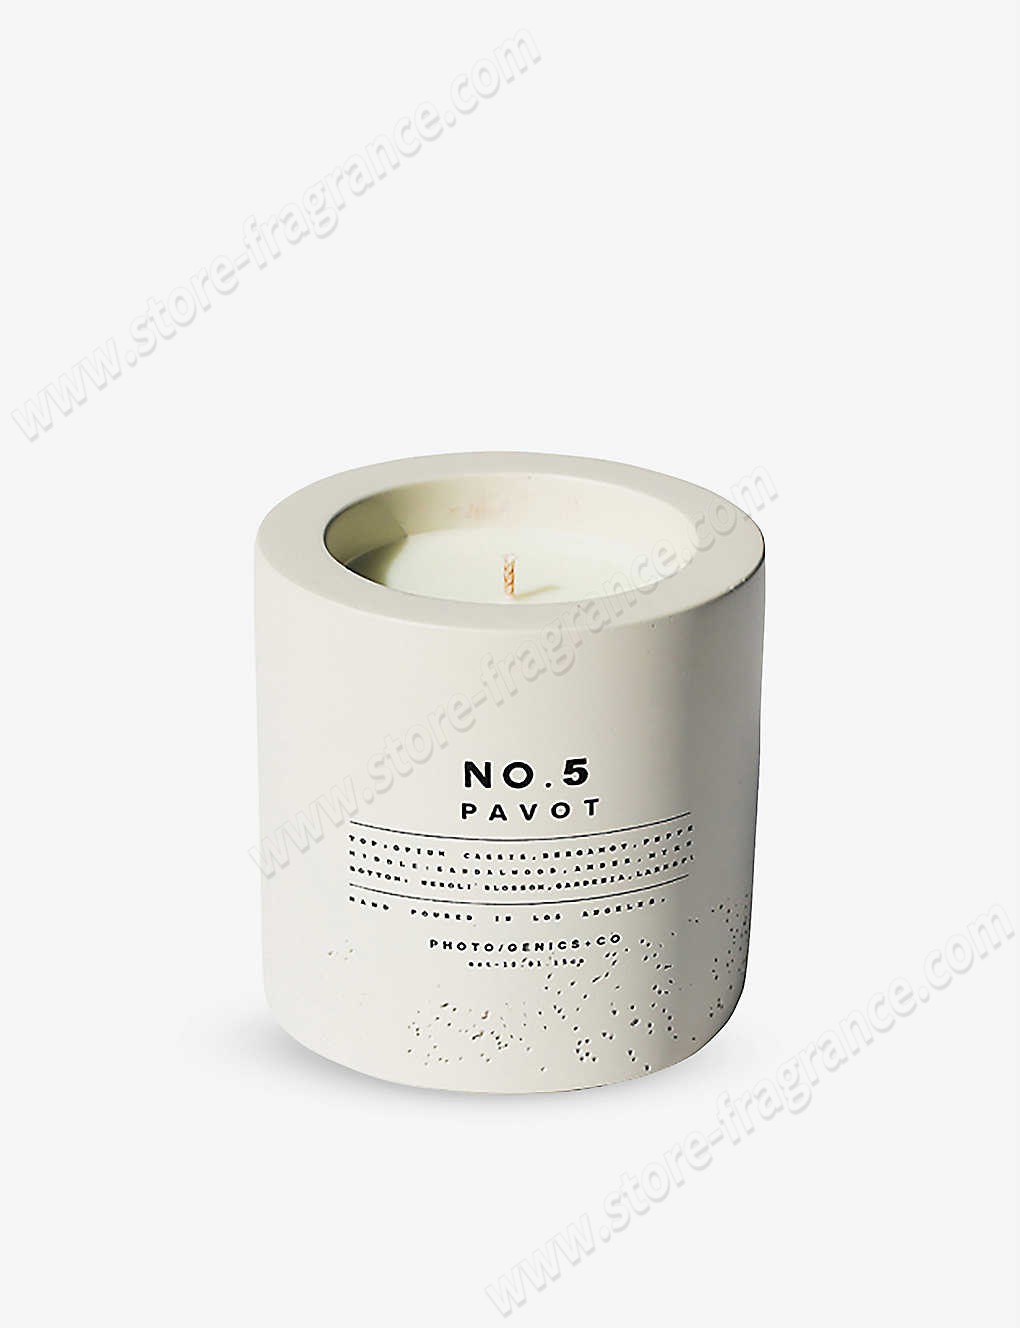 PHOTOGENICS & CO./No. 5 Pavot concrete candle 8oz ✿ Discount Store - -0